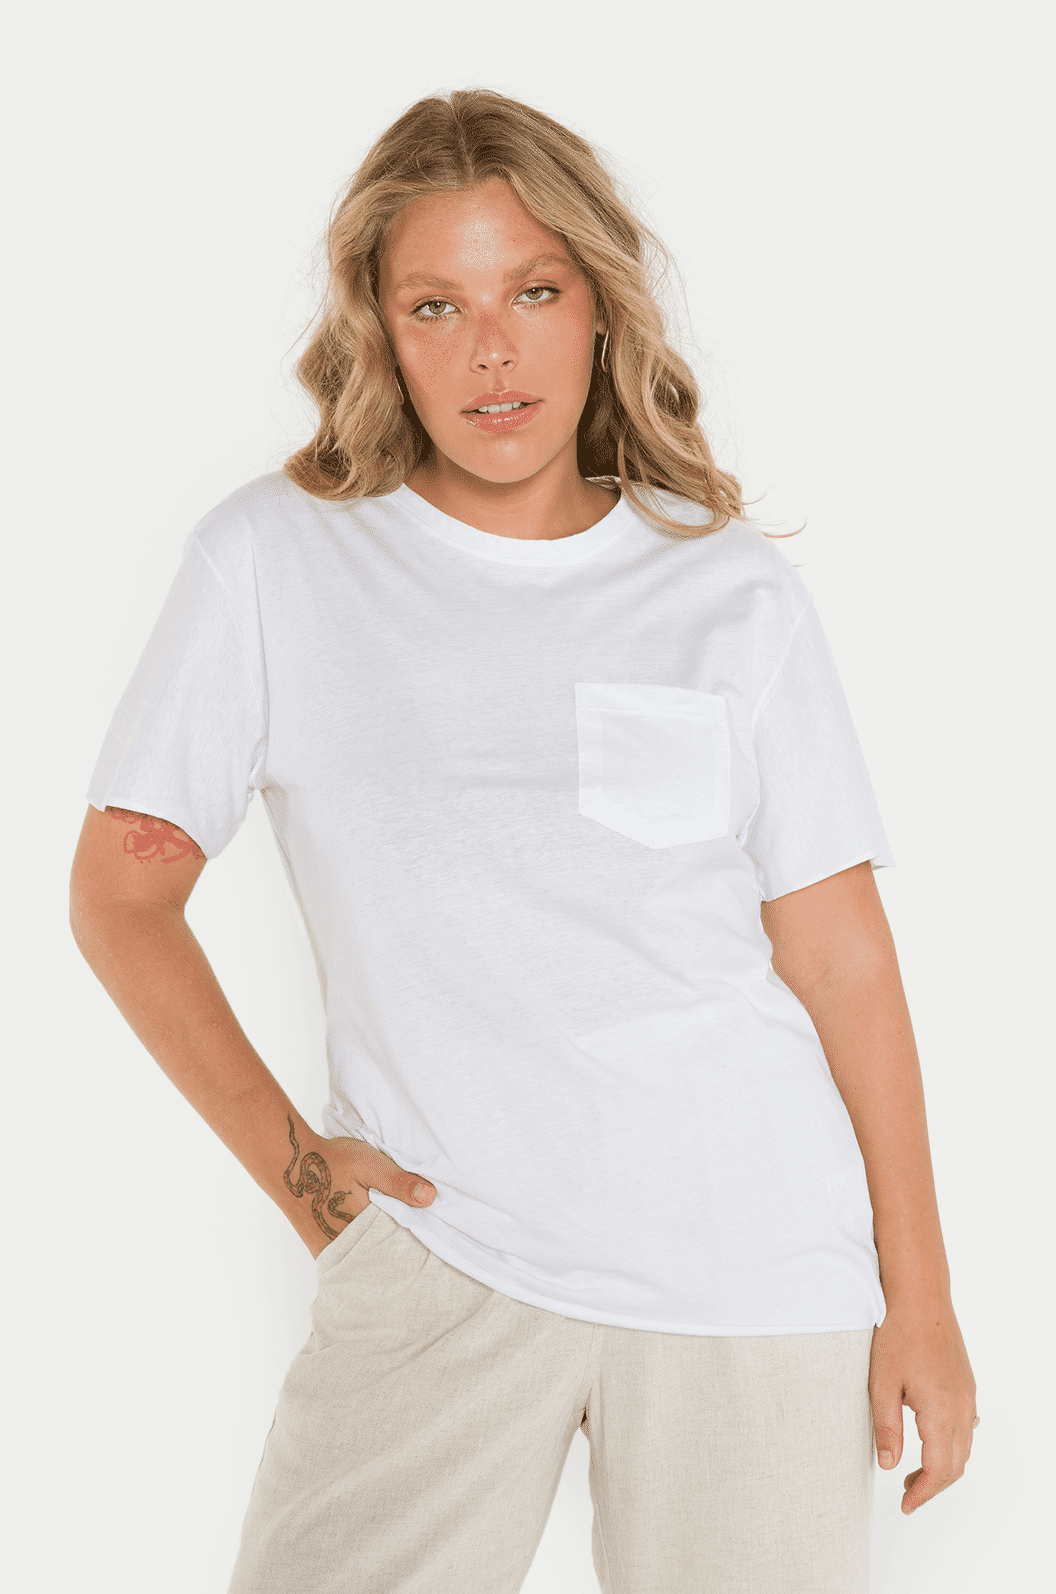 T-shirt Branca Algodão